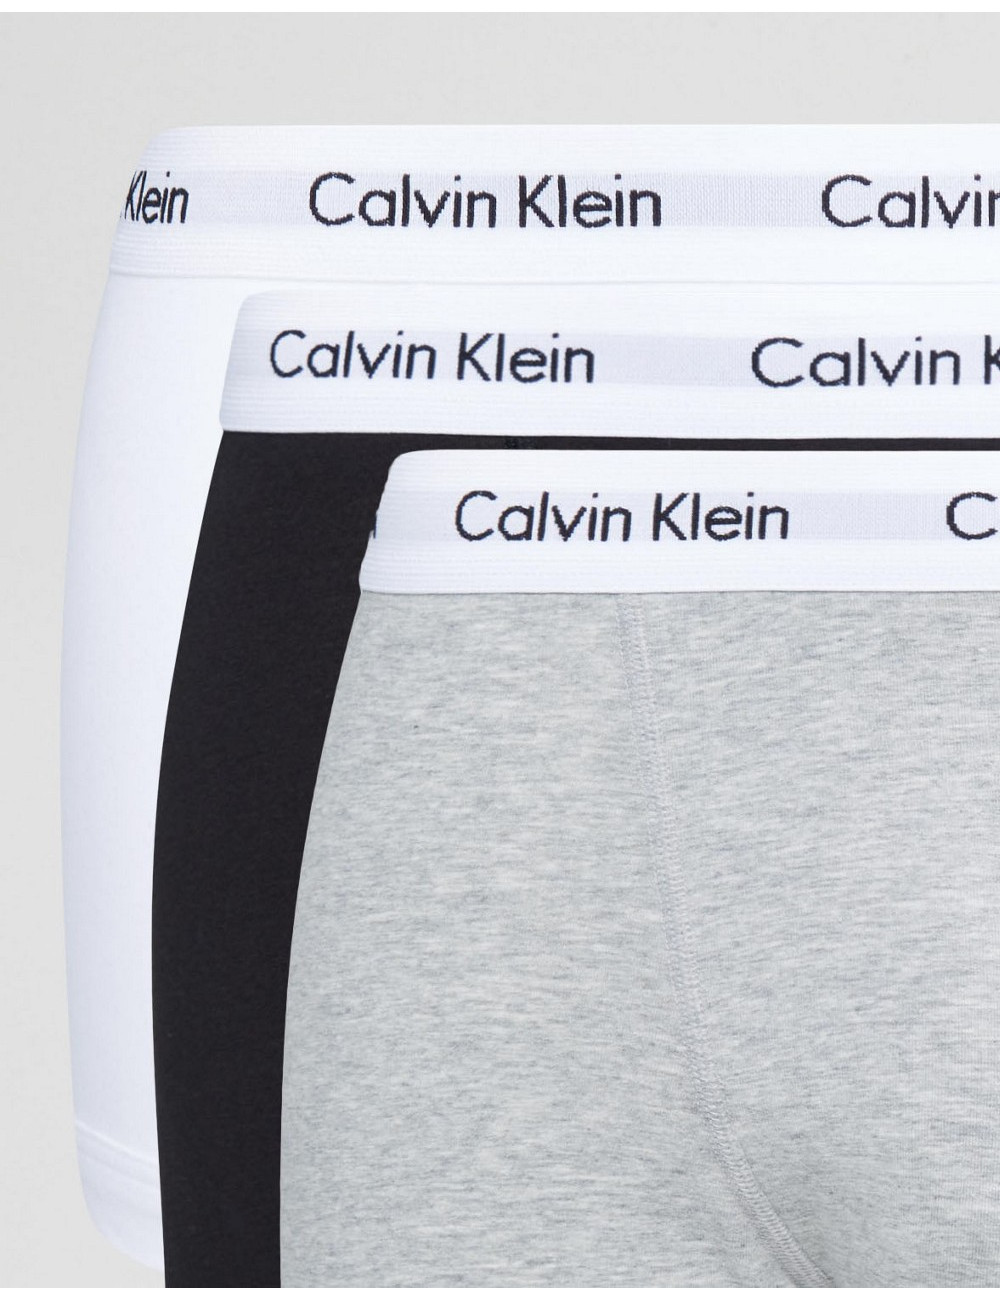 Calvin Klein trunks 3 pack...